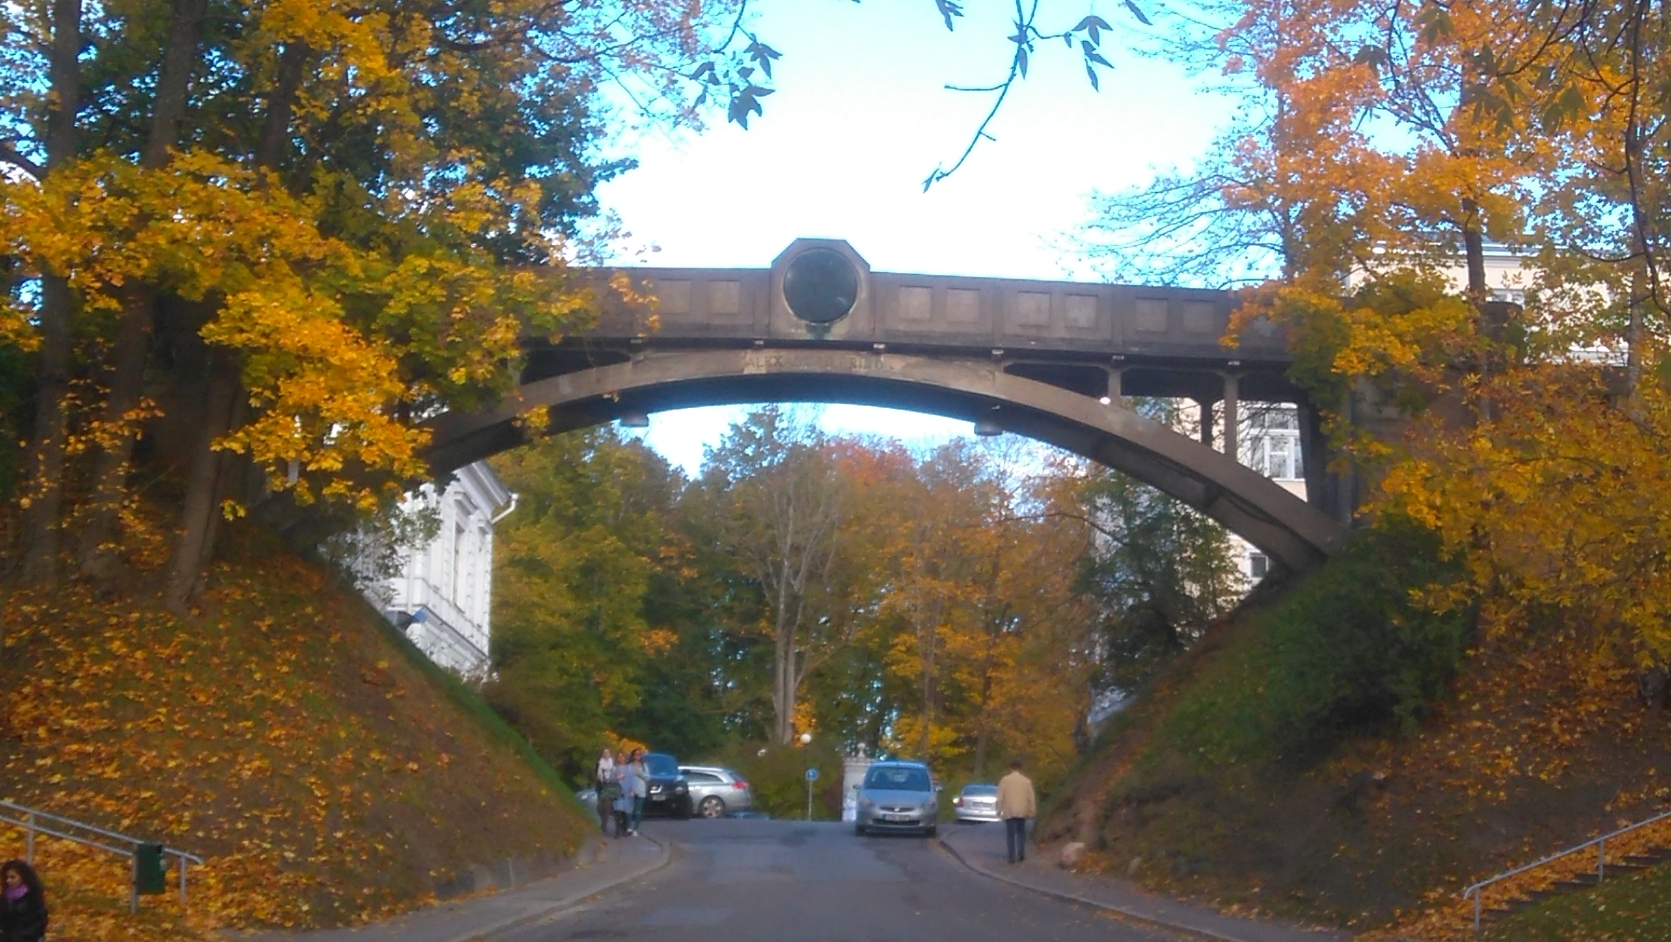 Tartu Estonia : Dead bridge = Diablaponto rephoto